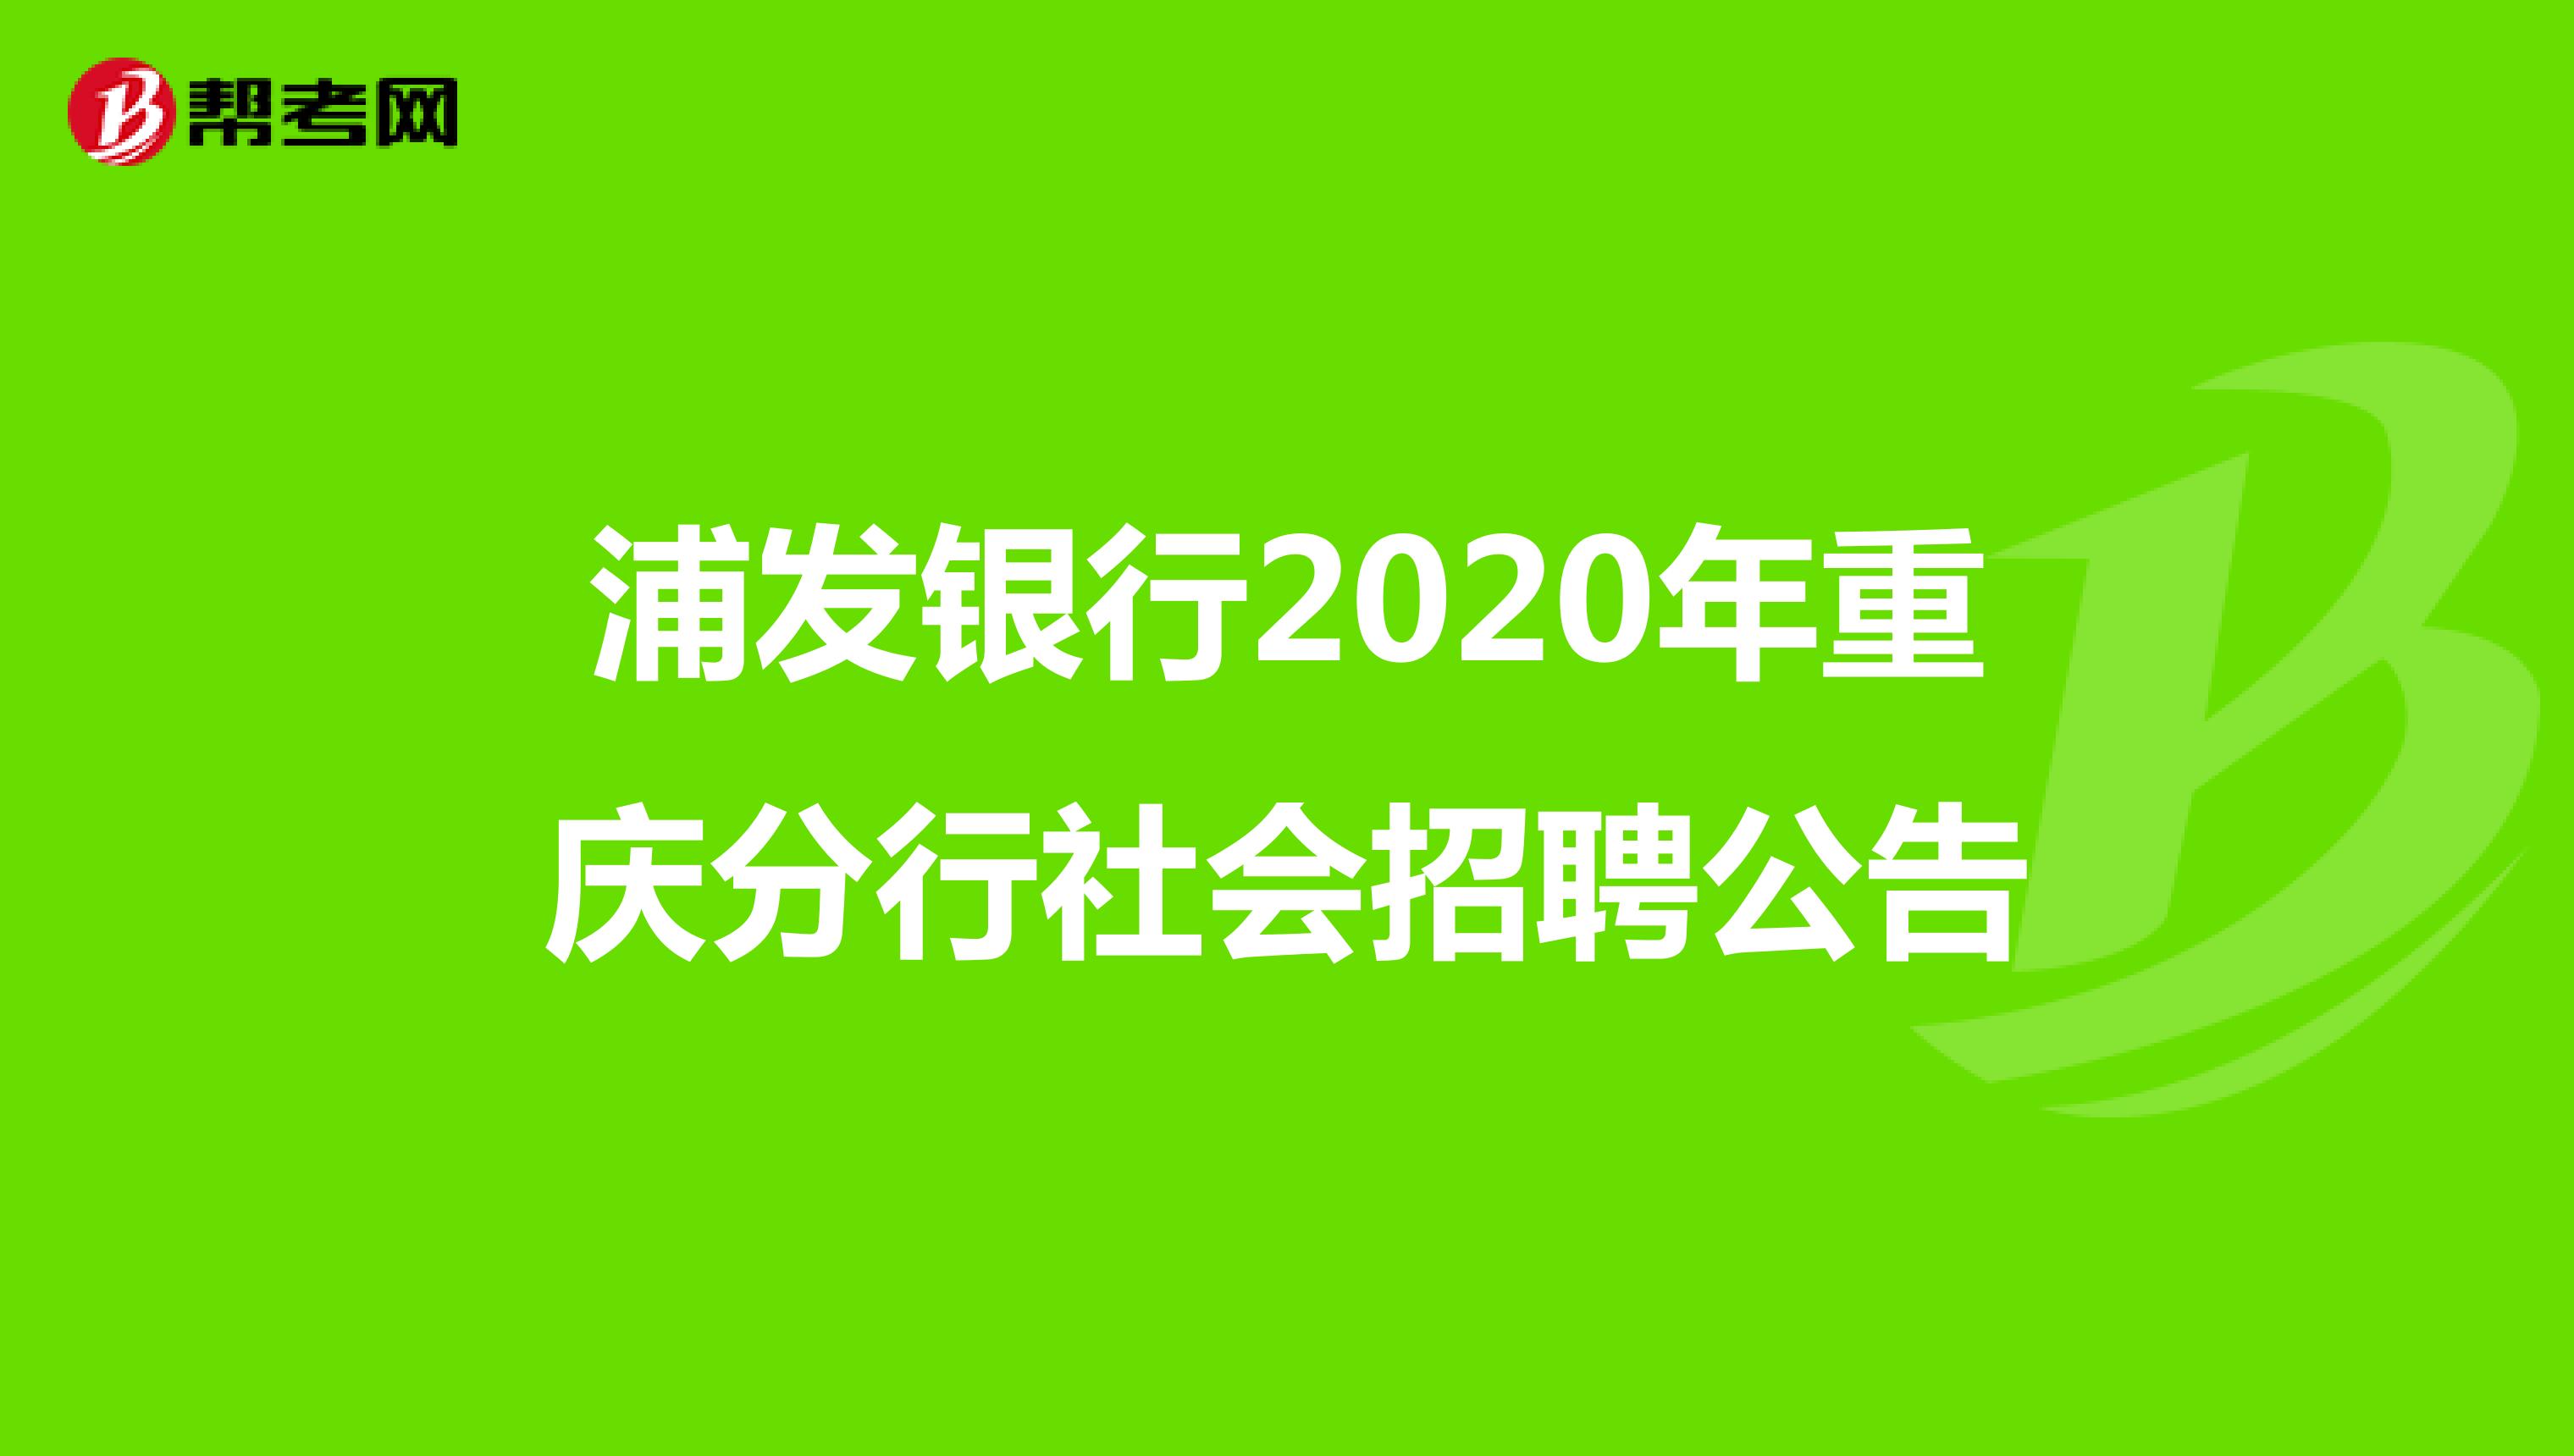 浦发银行2020年重庆分行社会招聘公告